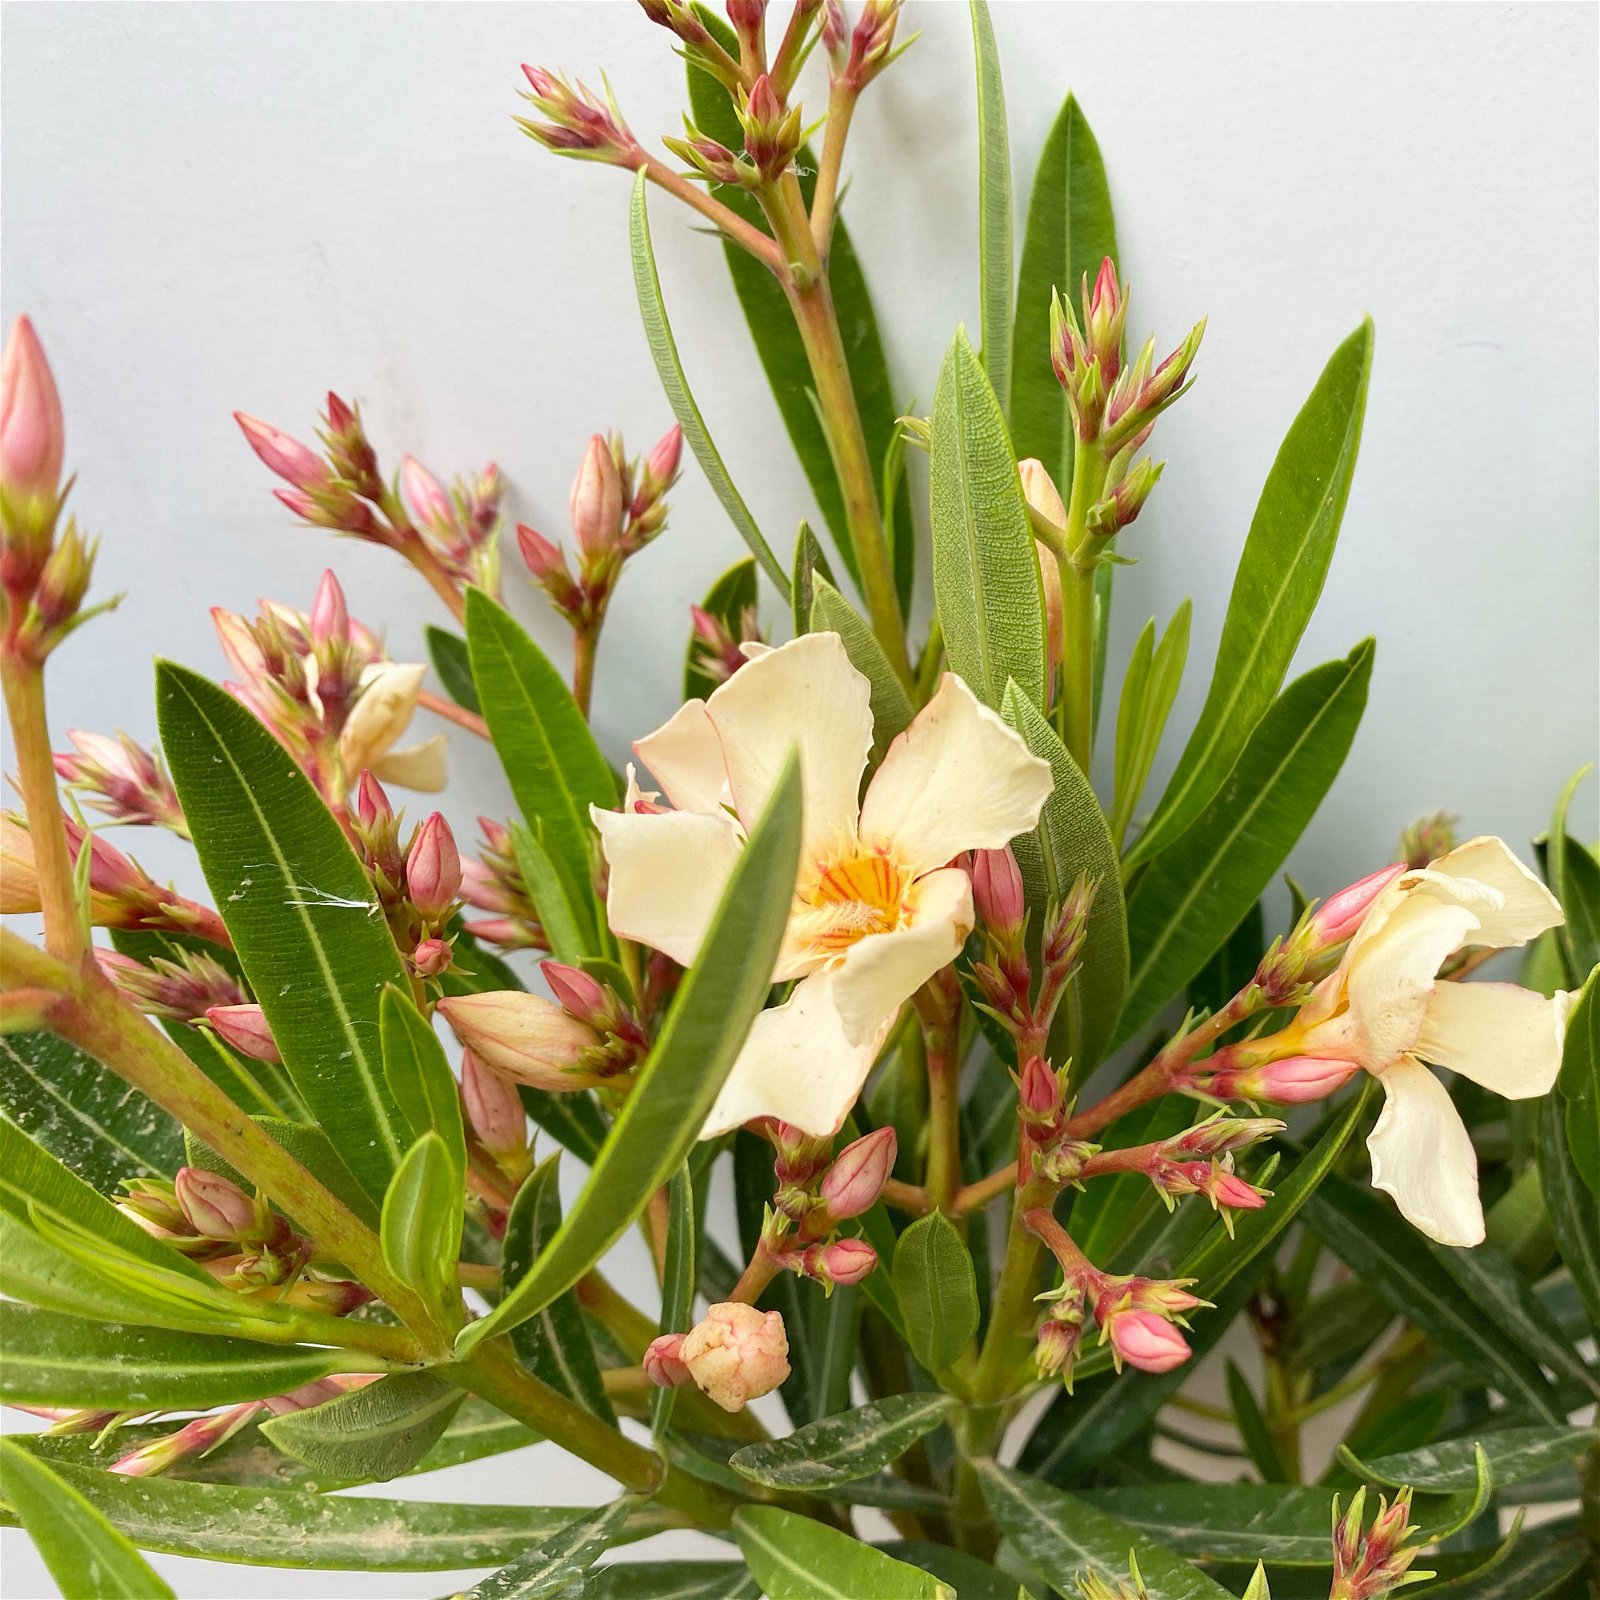 Oleander Farbe zufällig, Busch, Topf-Ø 19 cm, Höhe ca. 50 cm